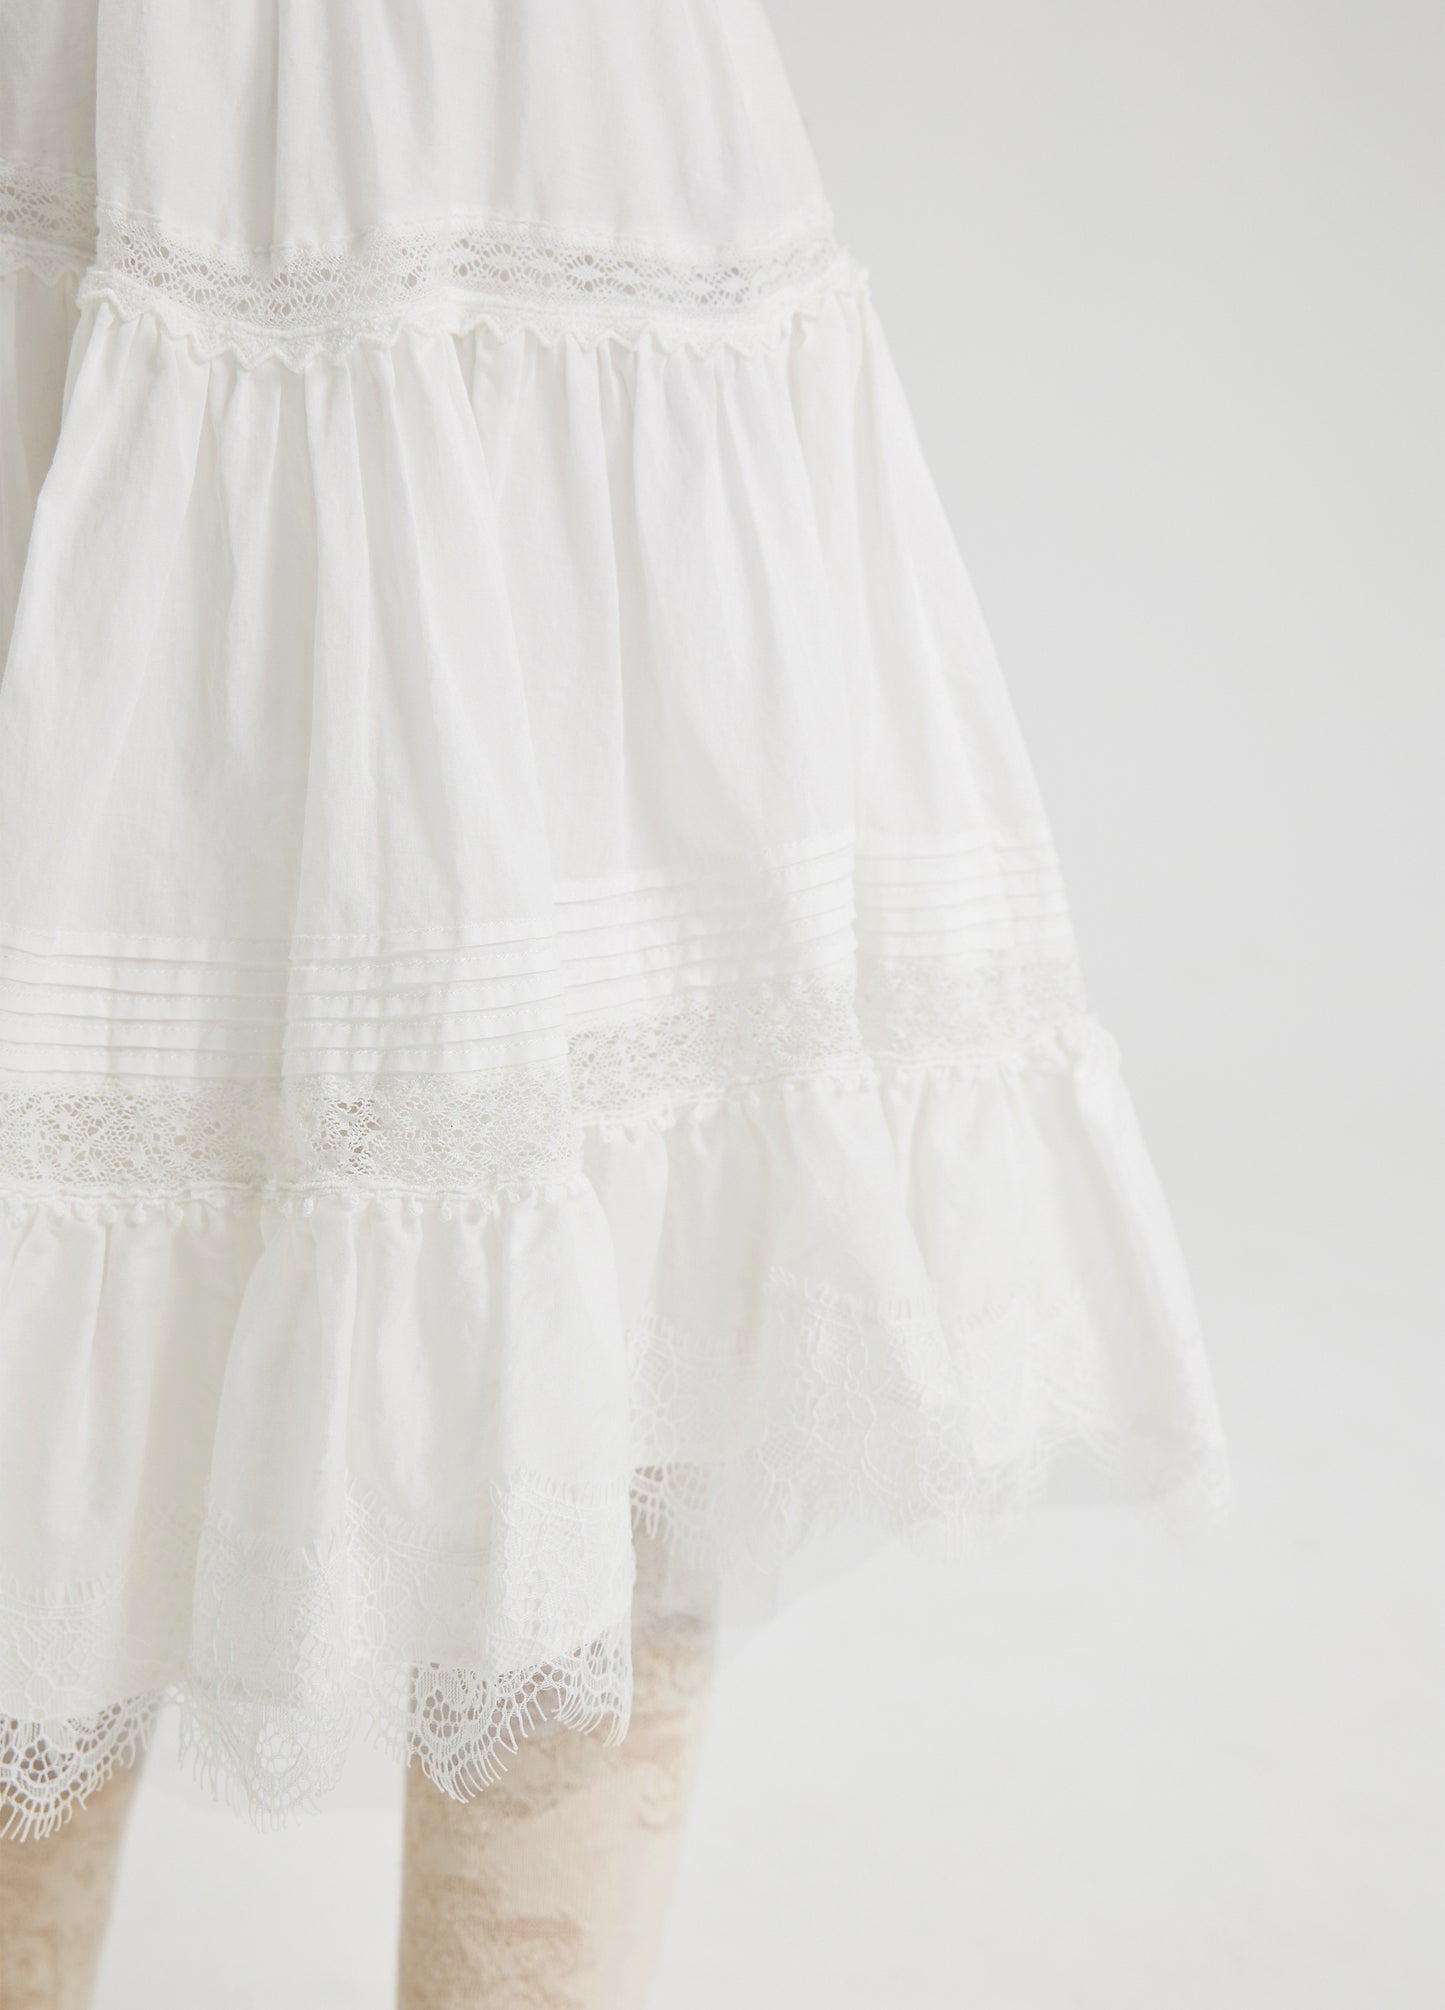 JNBY Short Skirt w/Ruffles _White 1M4D00500-103